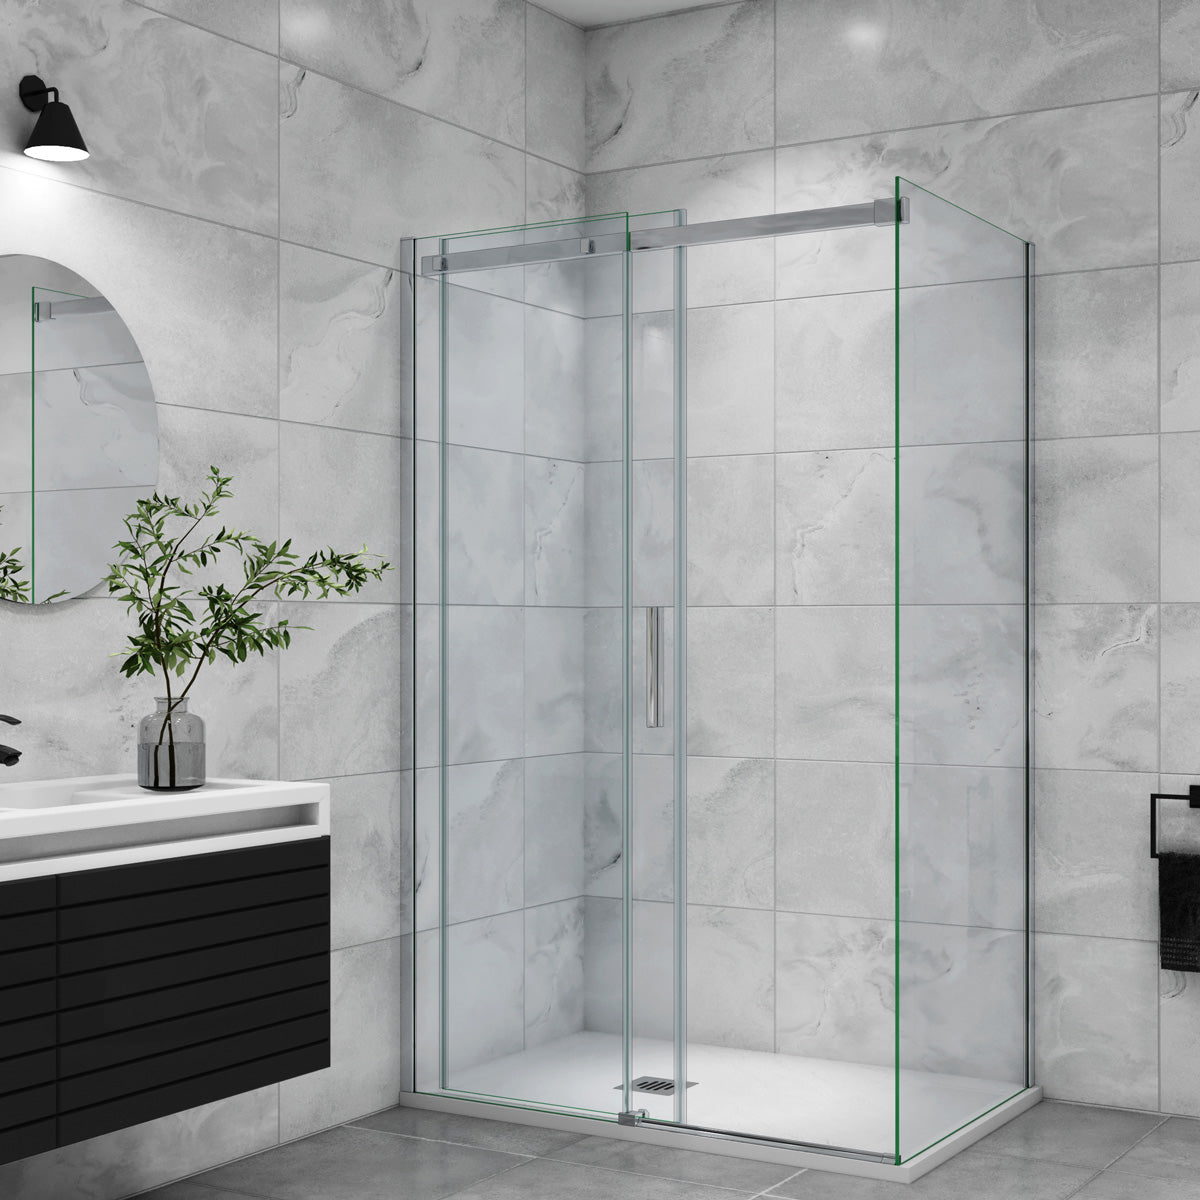 Duschtür+Seitenwand Duschkabine Dusche 140x70 cm Glasstärke 6mm Schiebetür Duschabtrennung